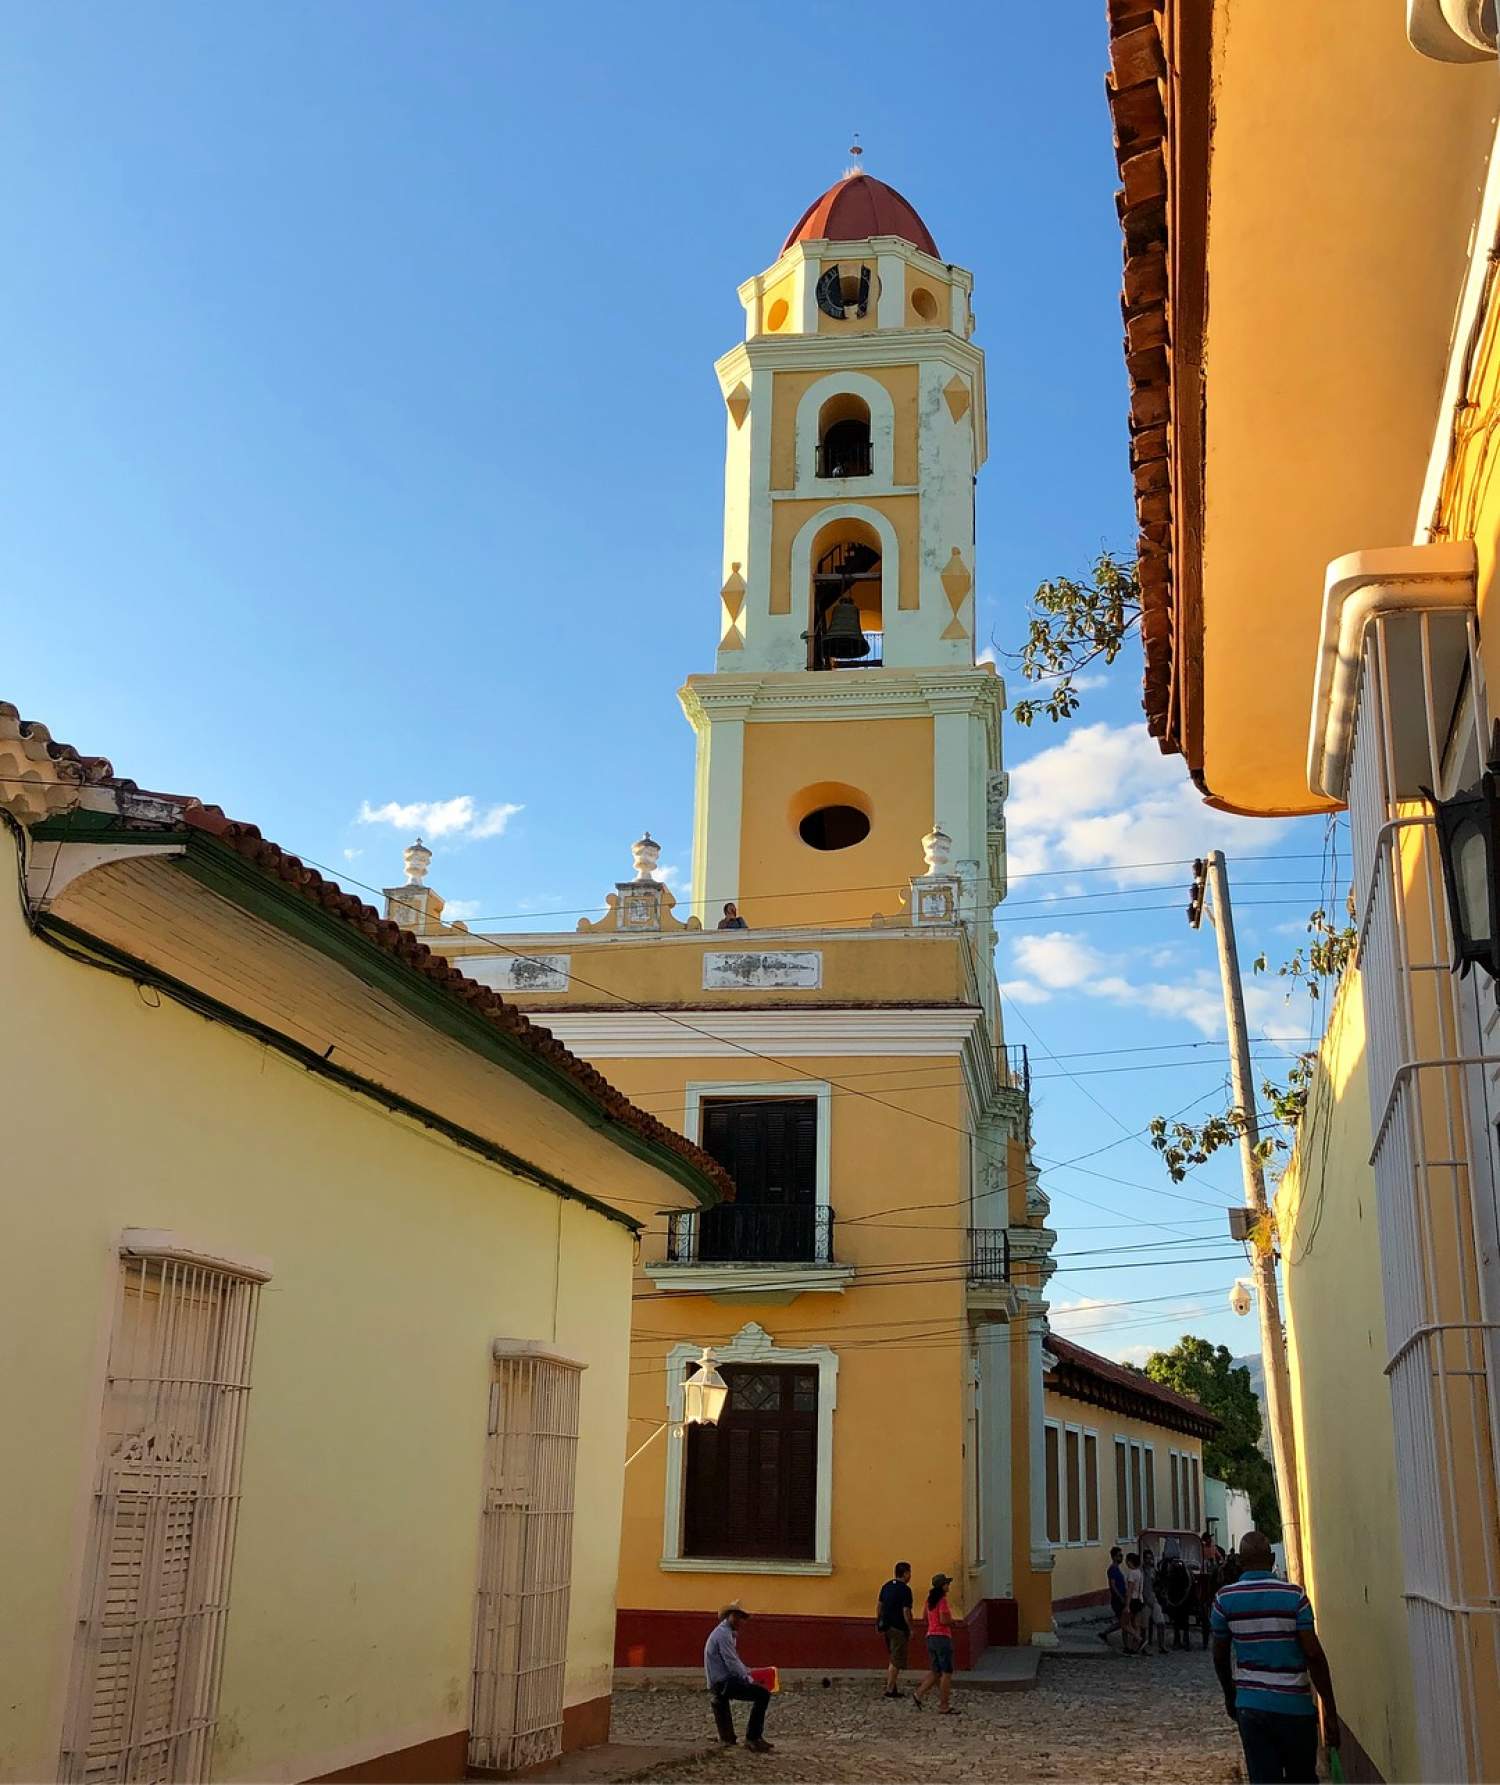 Clock tower in Trinidad, Cuba